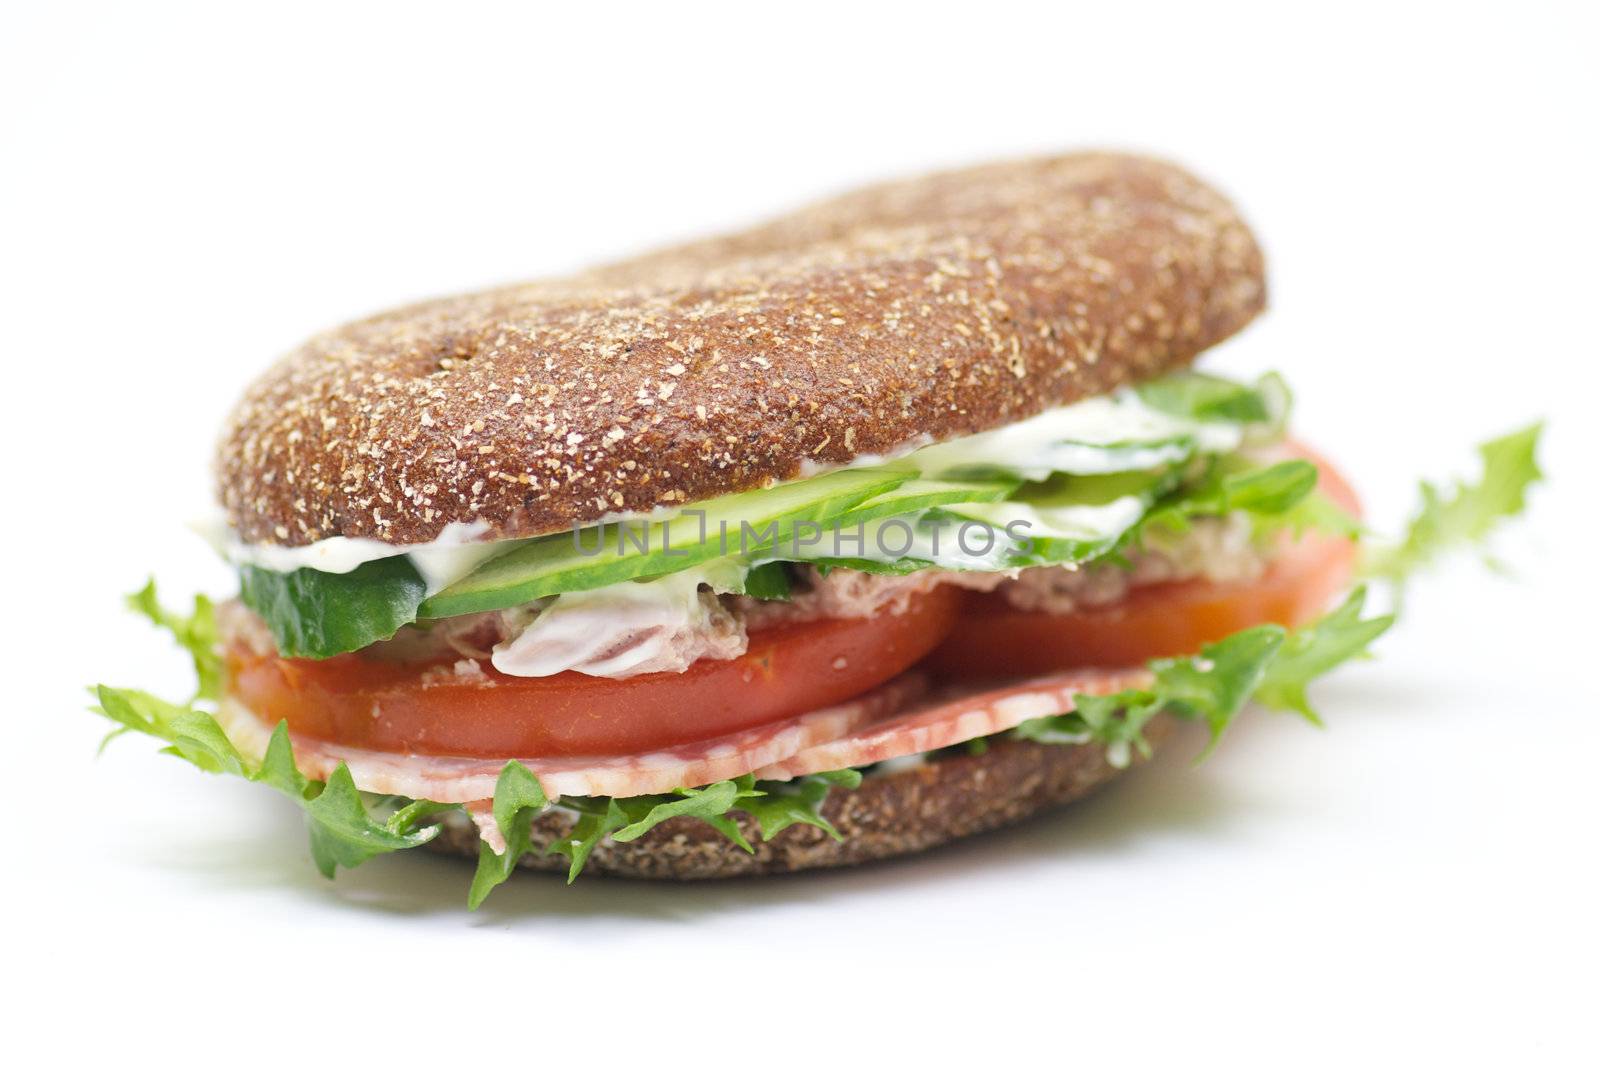 Whole wheat bread sandwich by zhekos